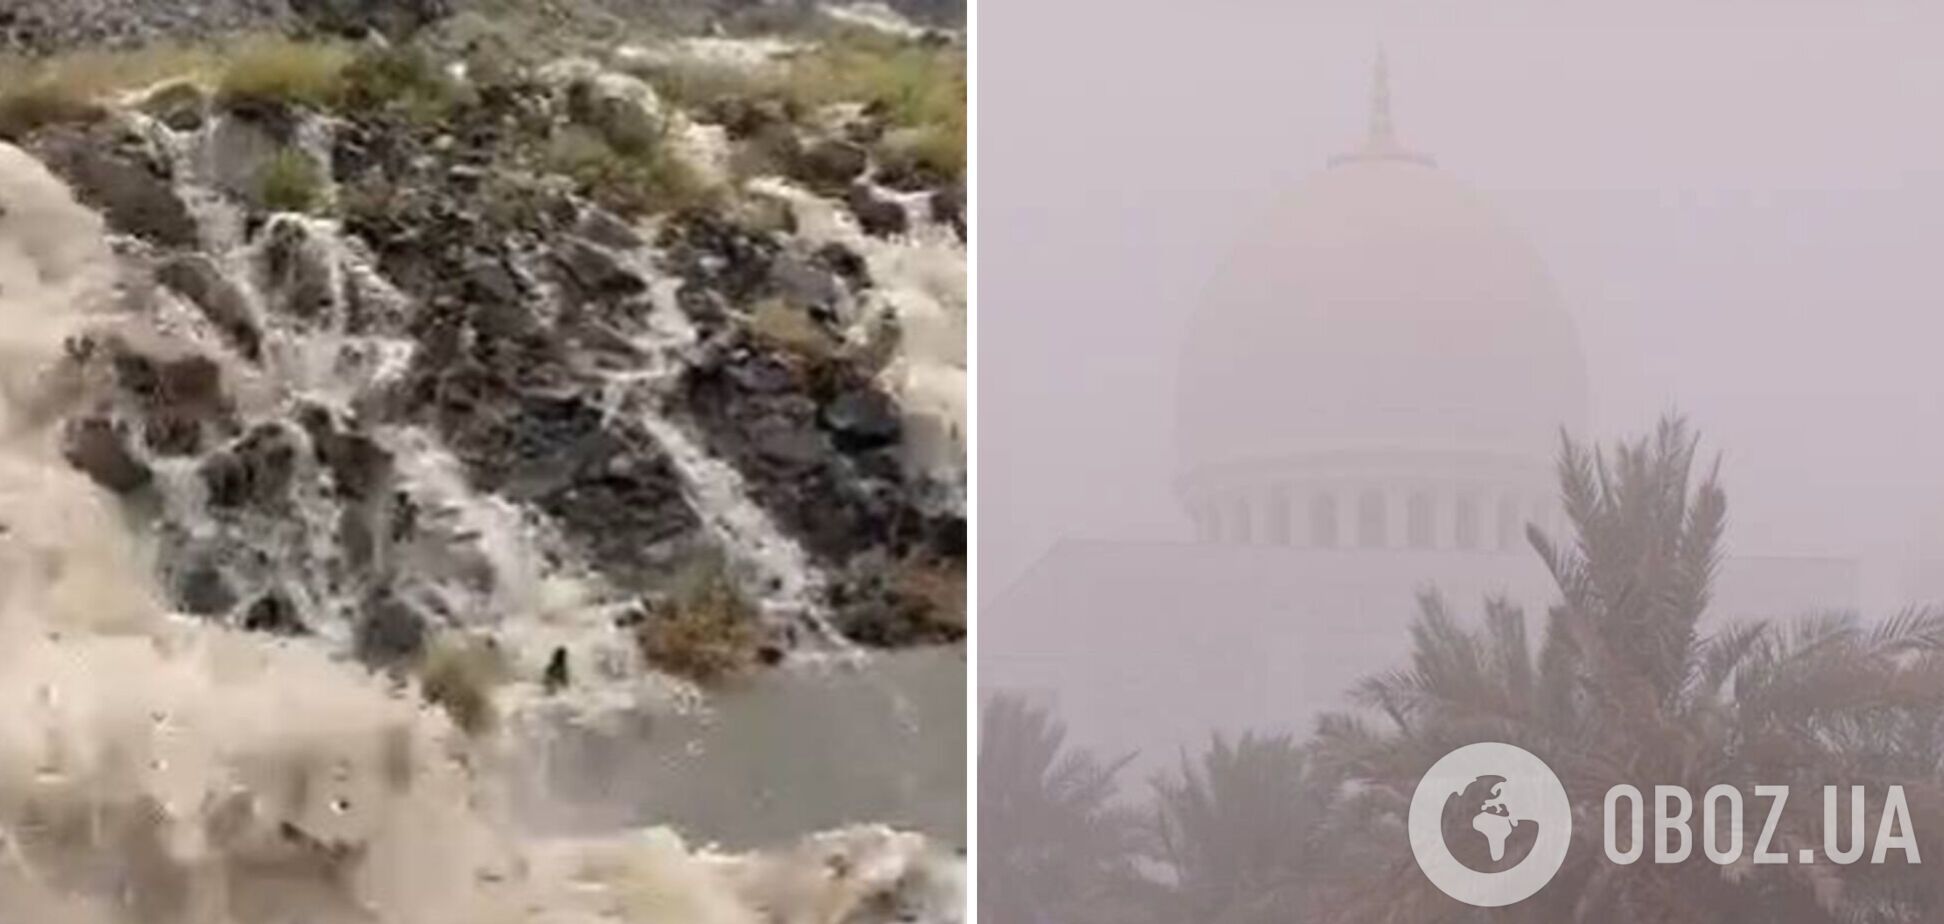 Как в фильме об Апокалипсисе: ОАЭ накрыла мощная песчаная буря. Фото и видео